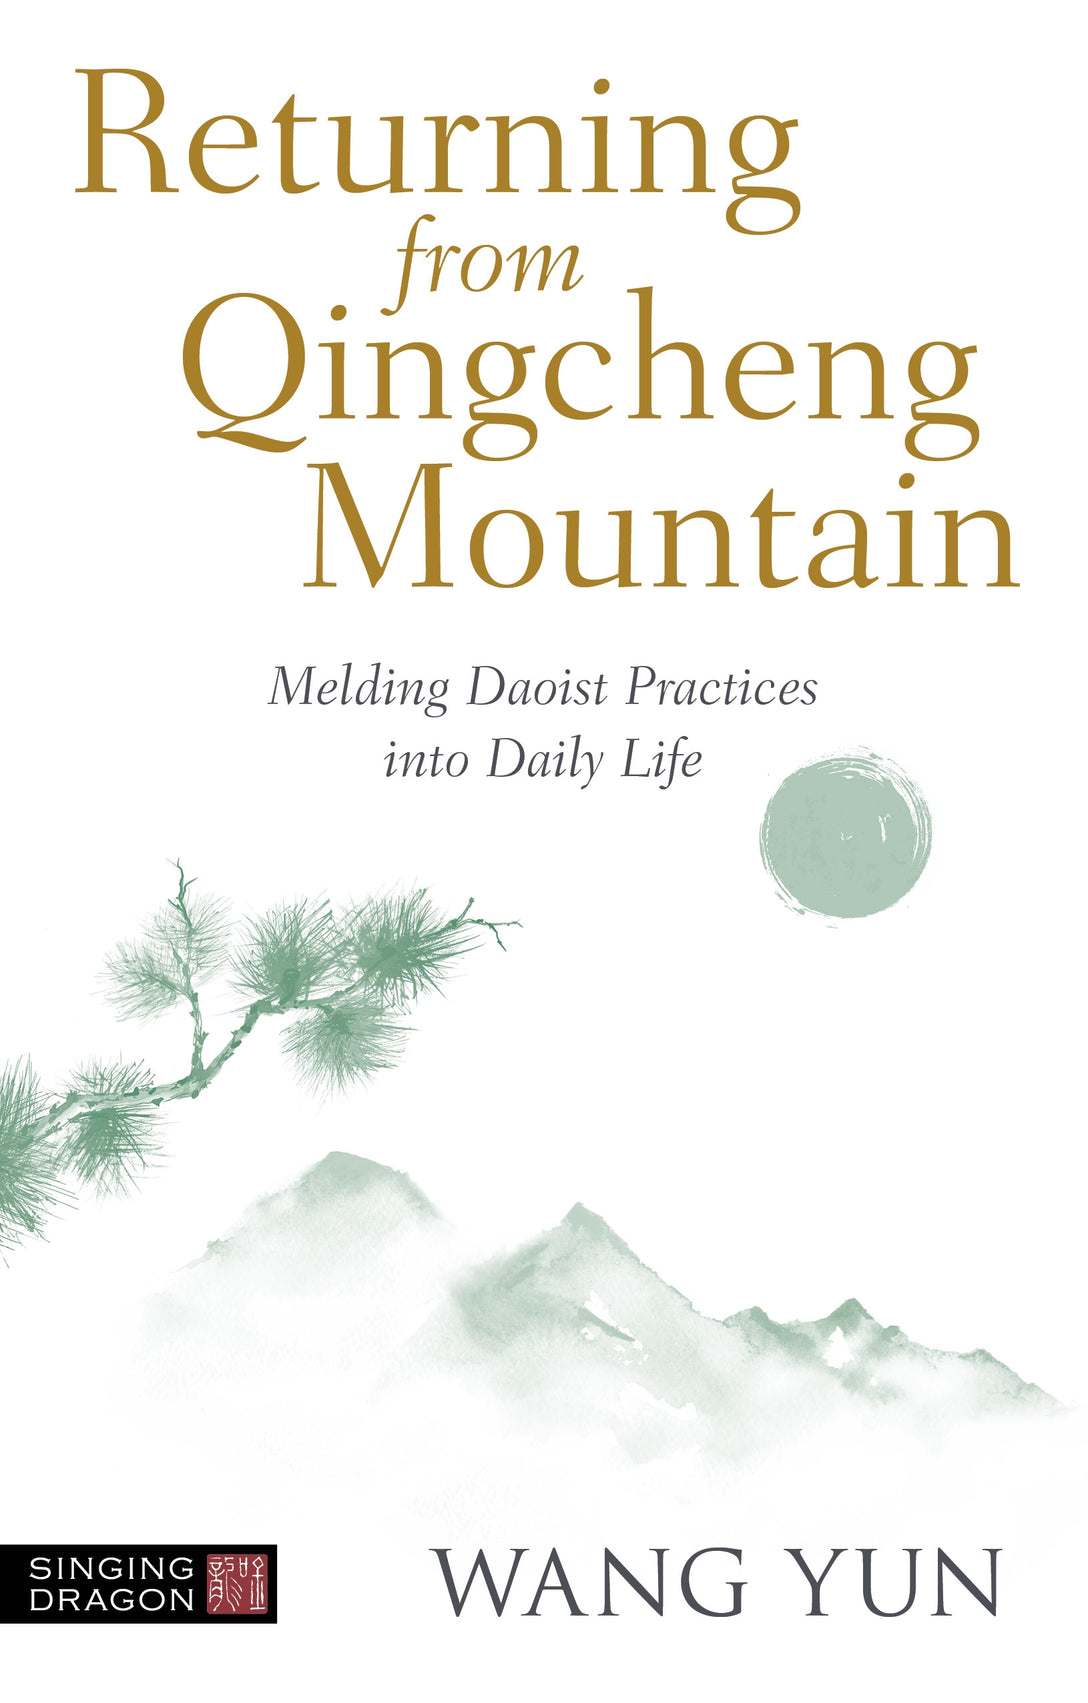 Returning from Qingcheng Mountain by Wang Yun